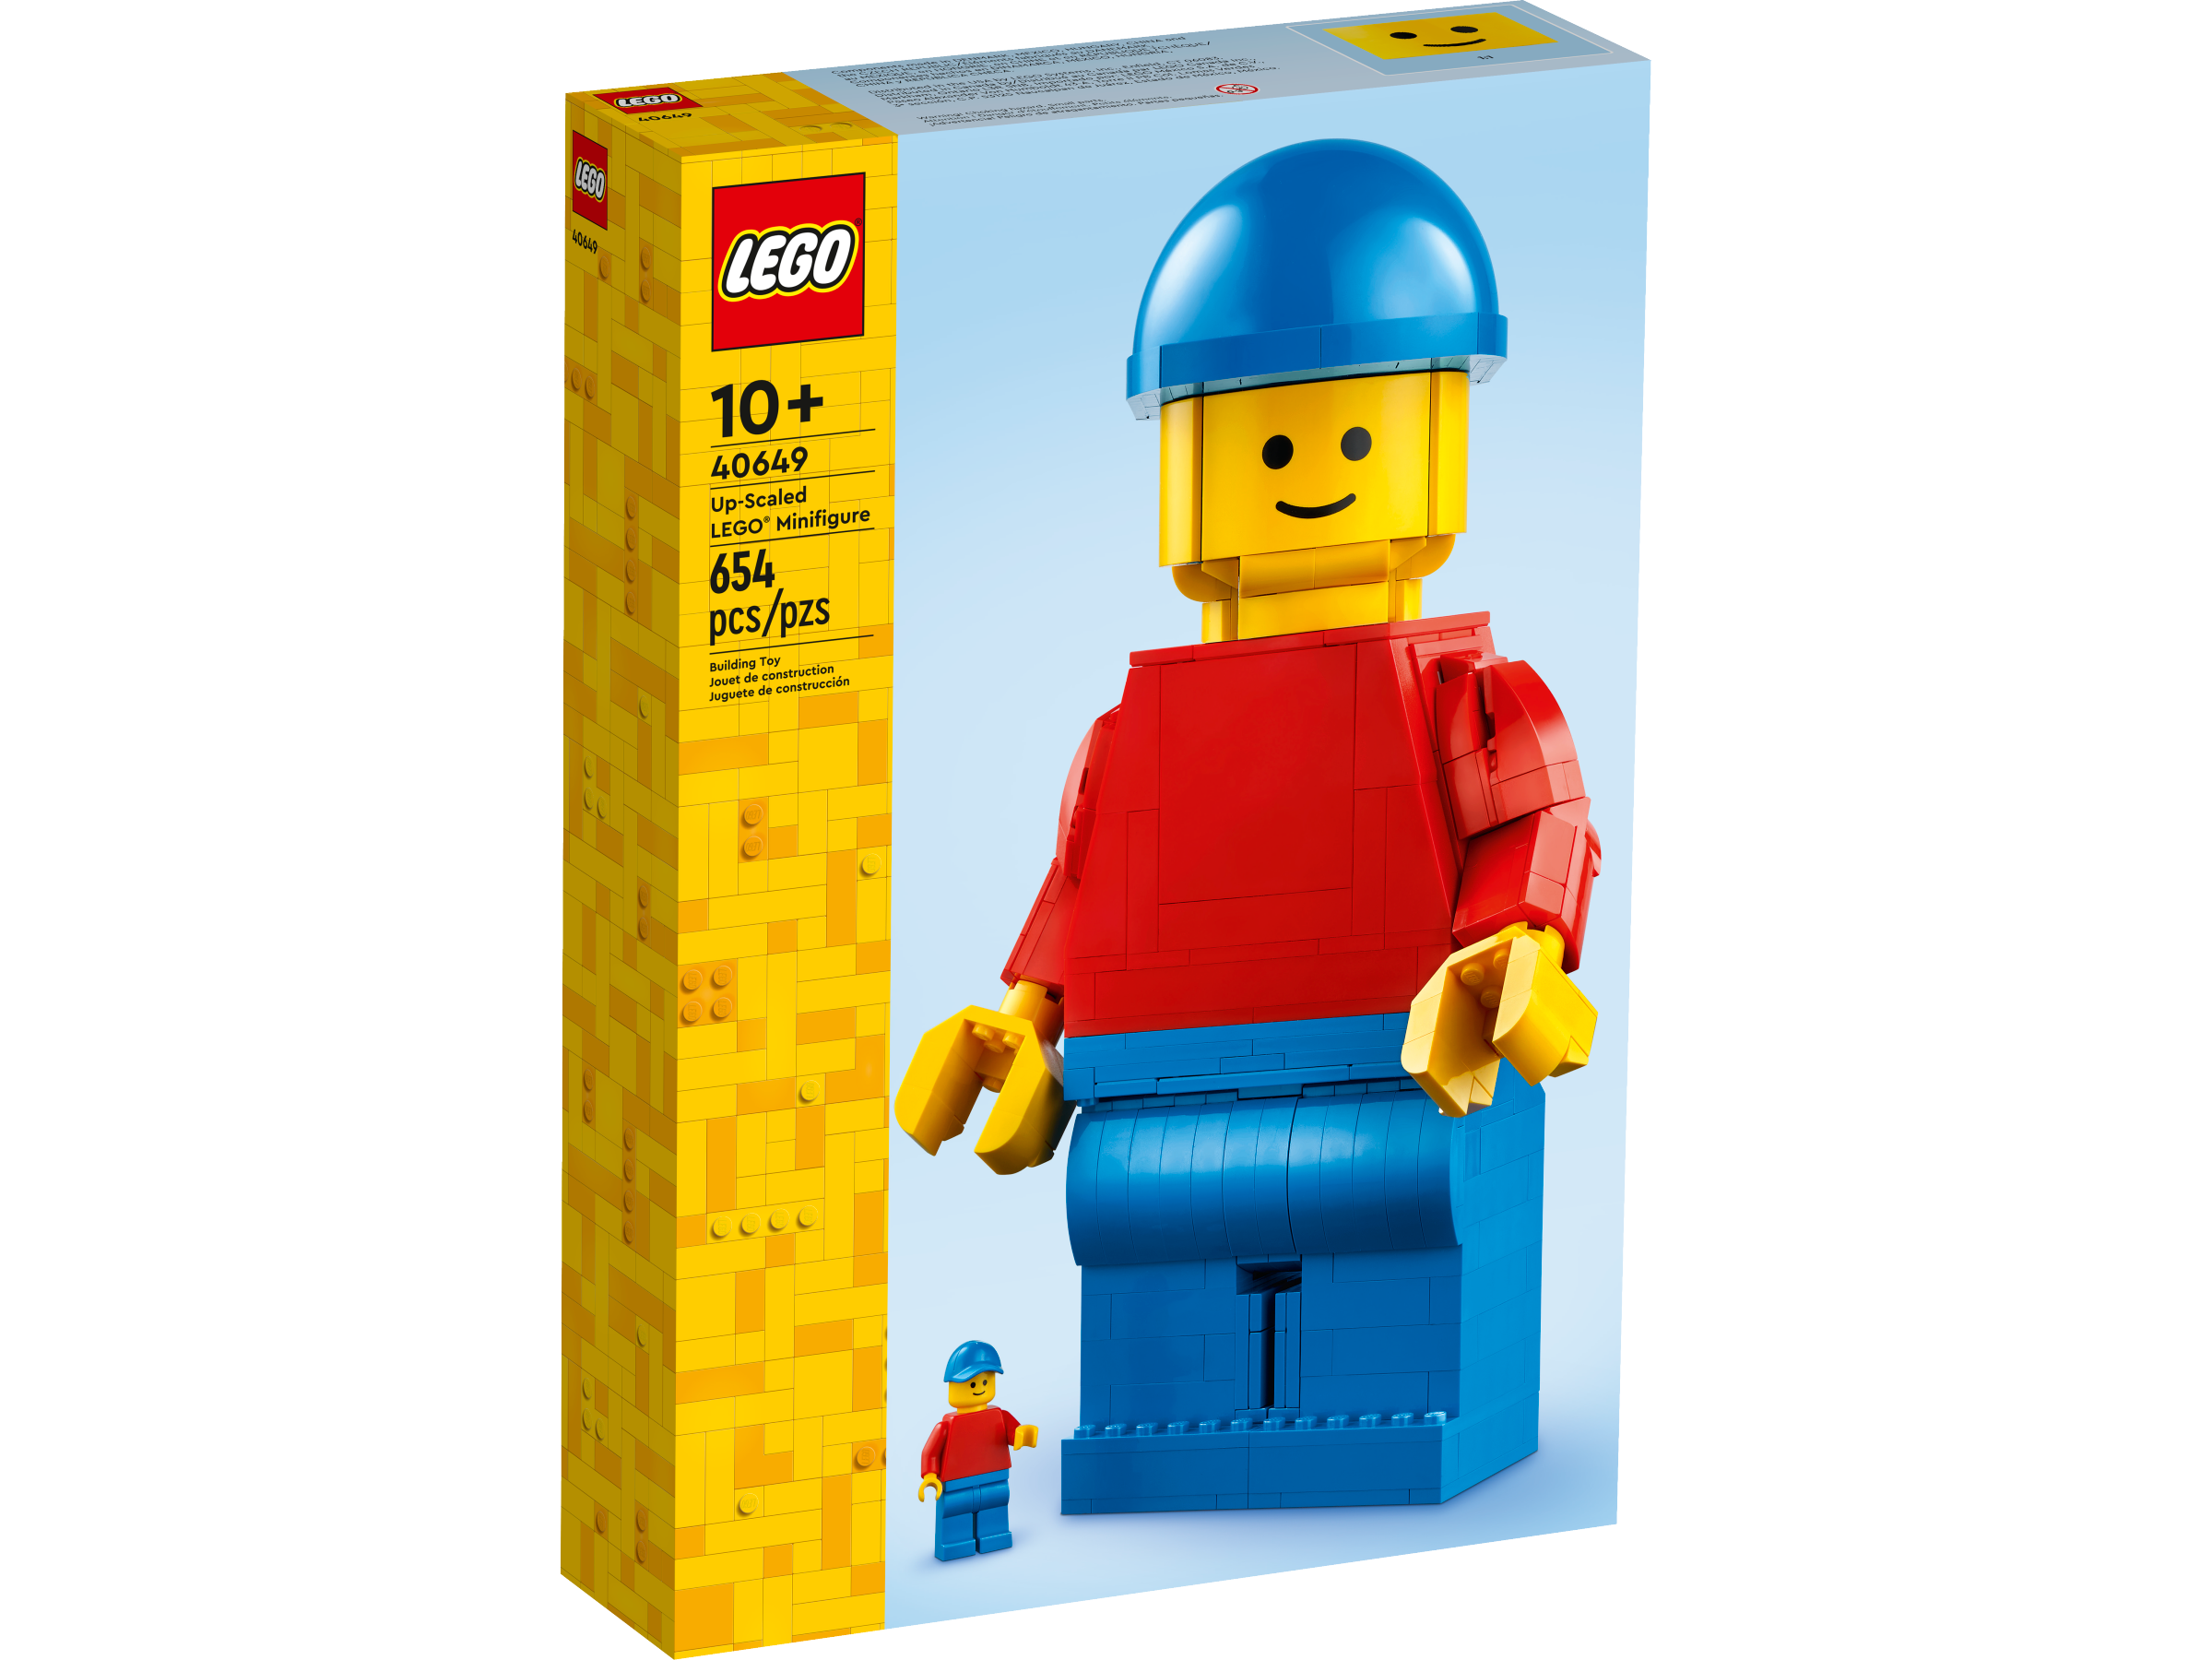 デラックス レゴ®ミニフィギュア 40649 | ミニフィギュア |レゴ®ストア 